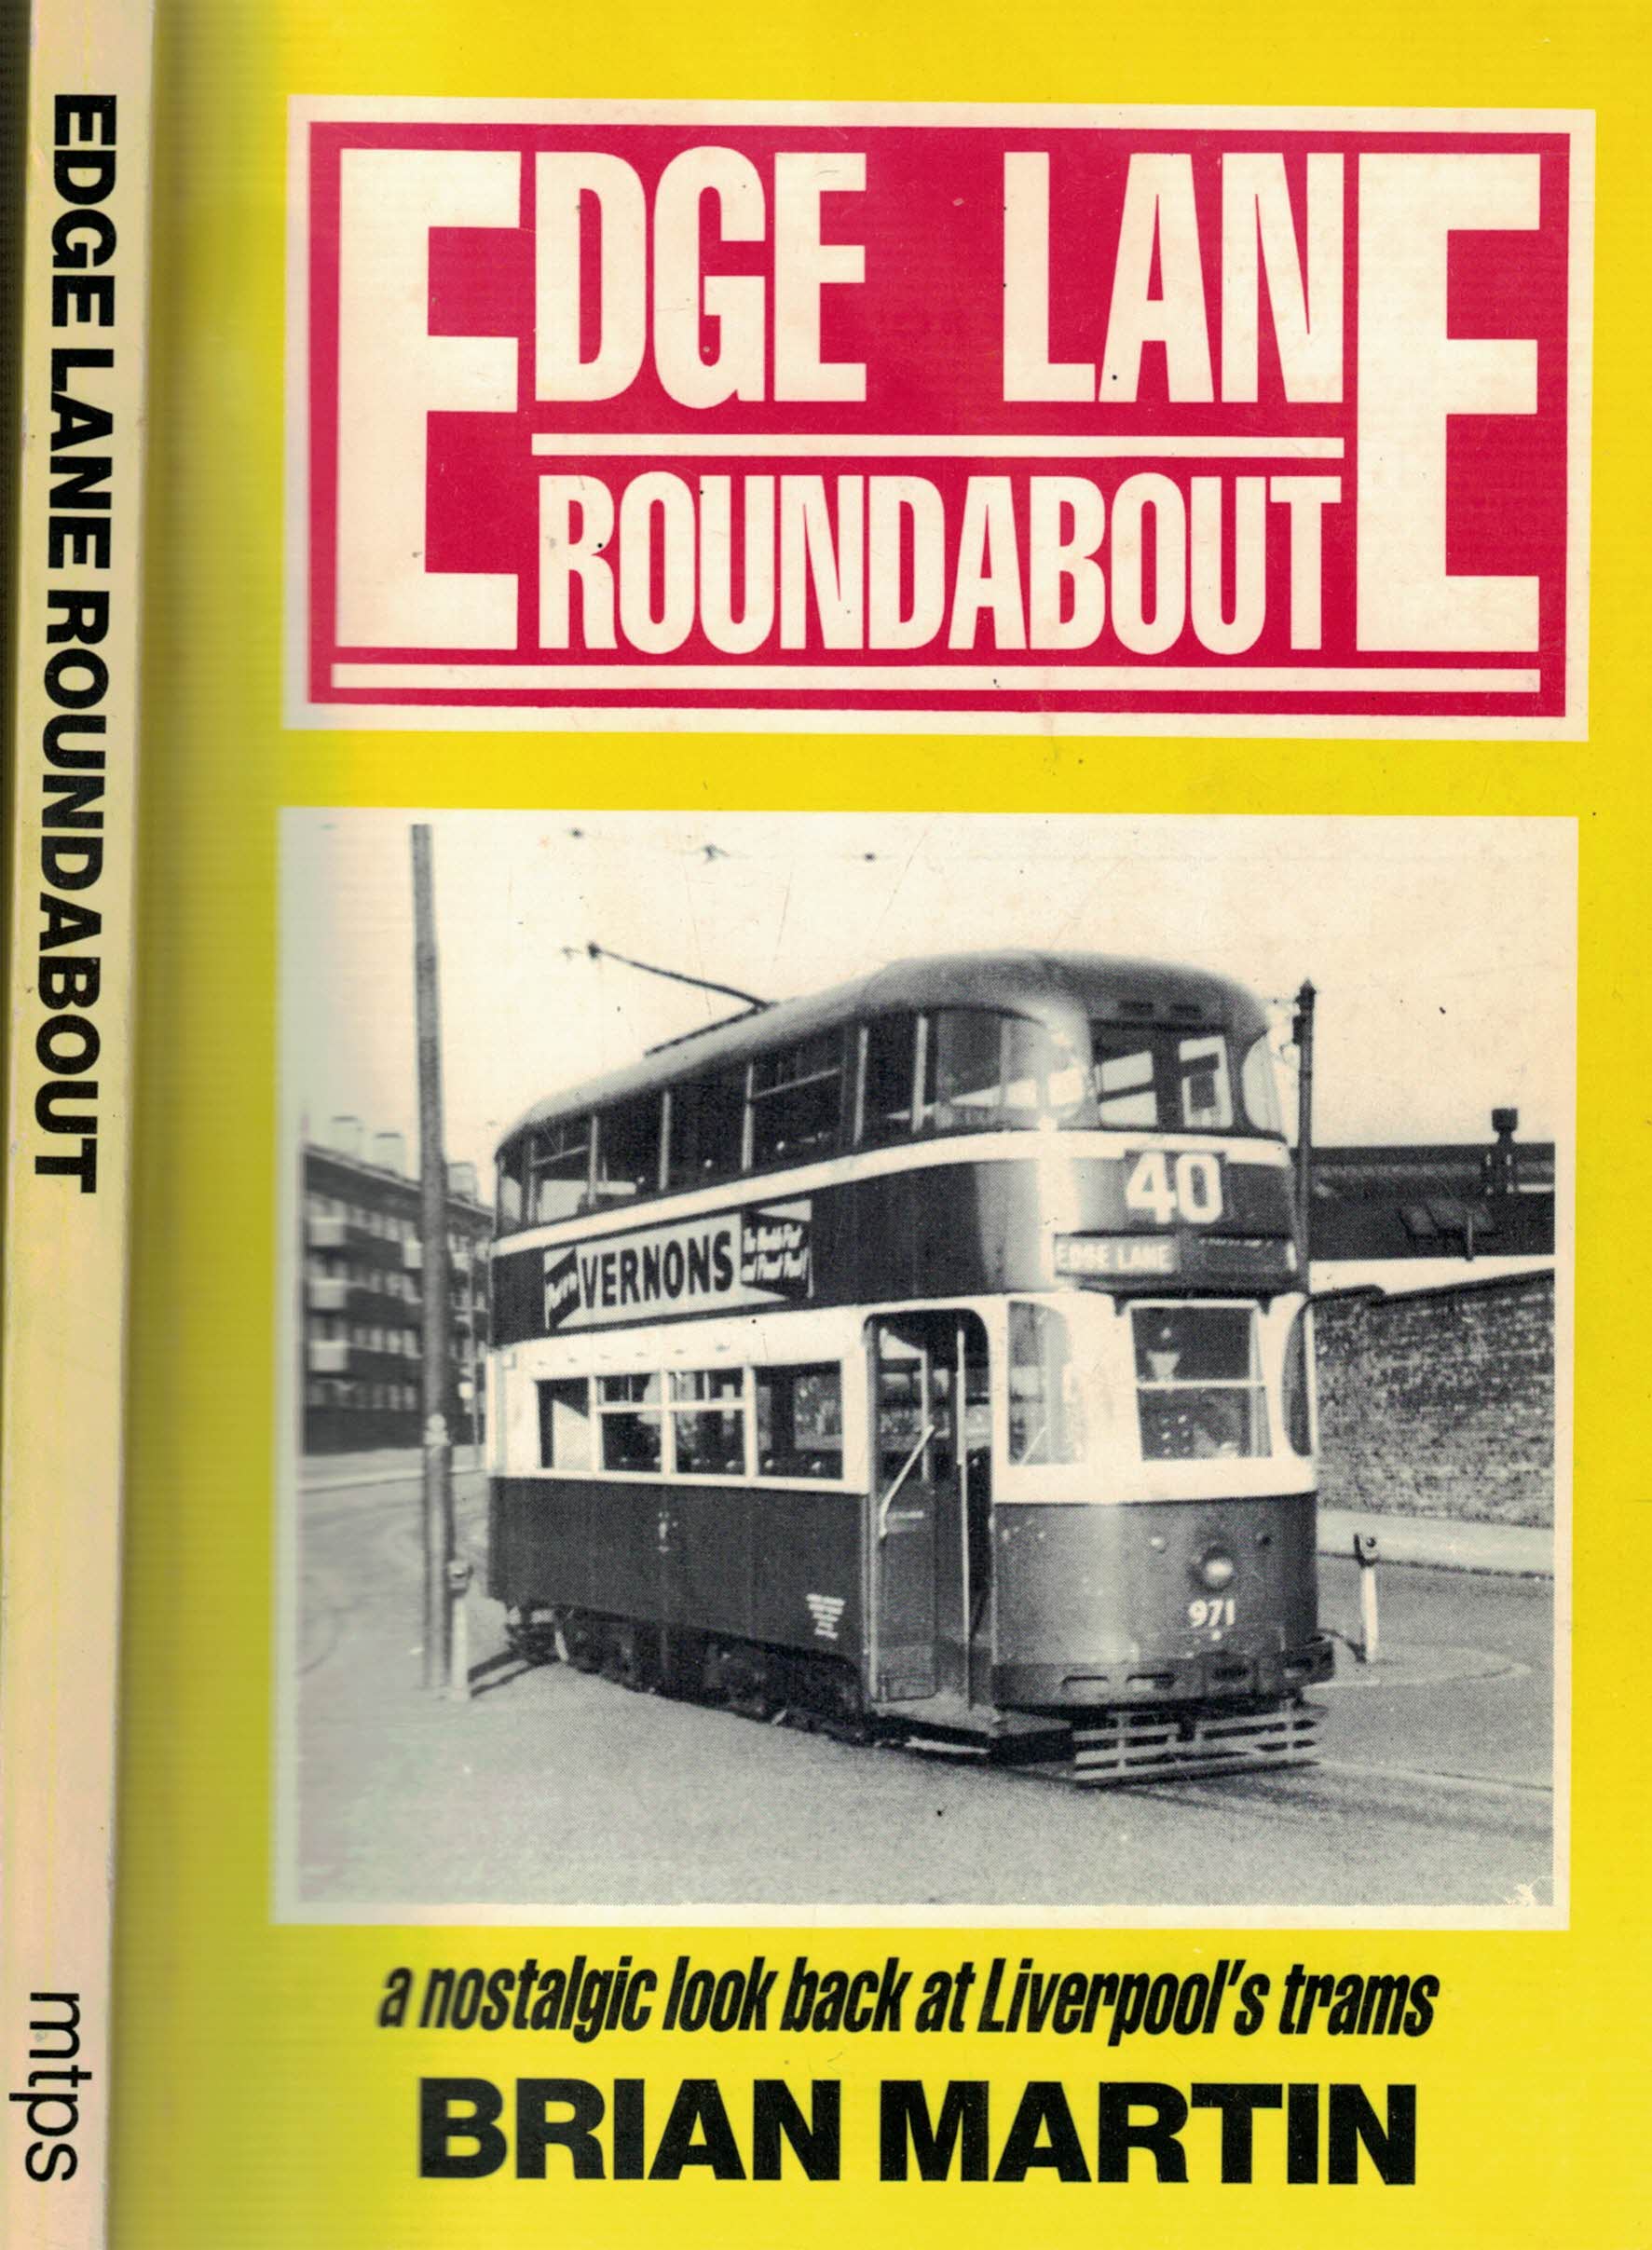 Edge Lane Roundabout